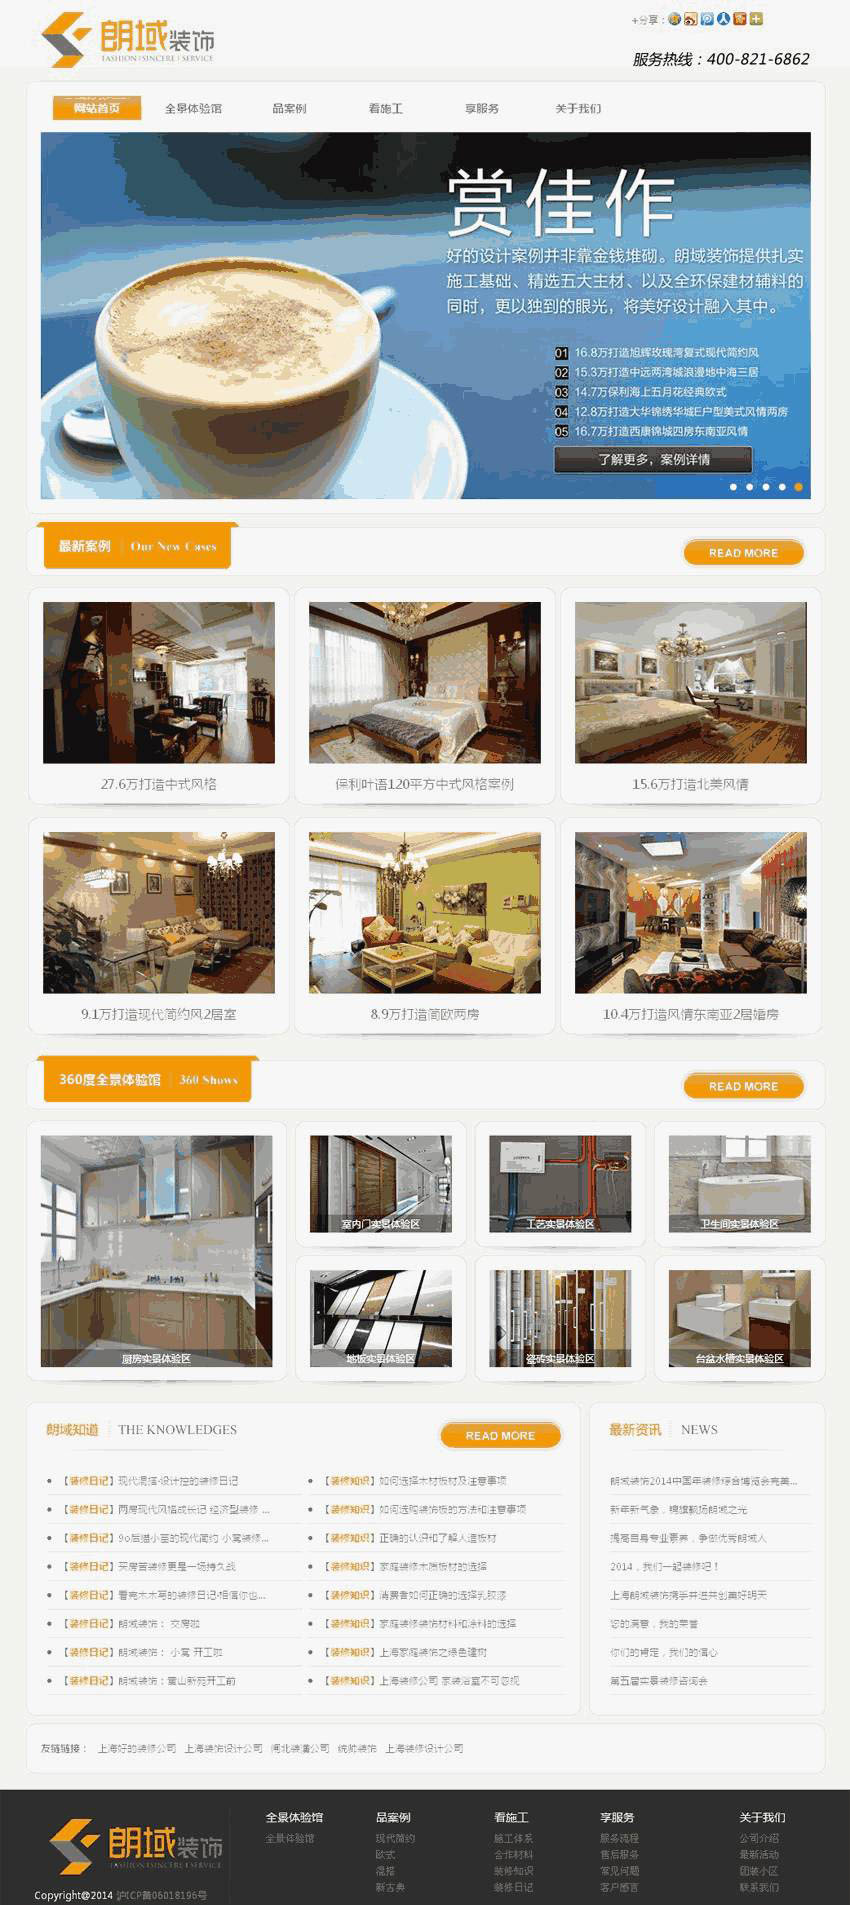 橙色房屋装饰公司网站主题模板下载演示图